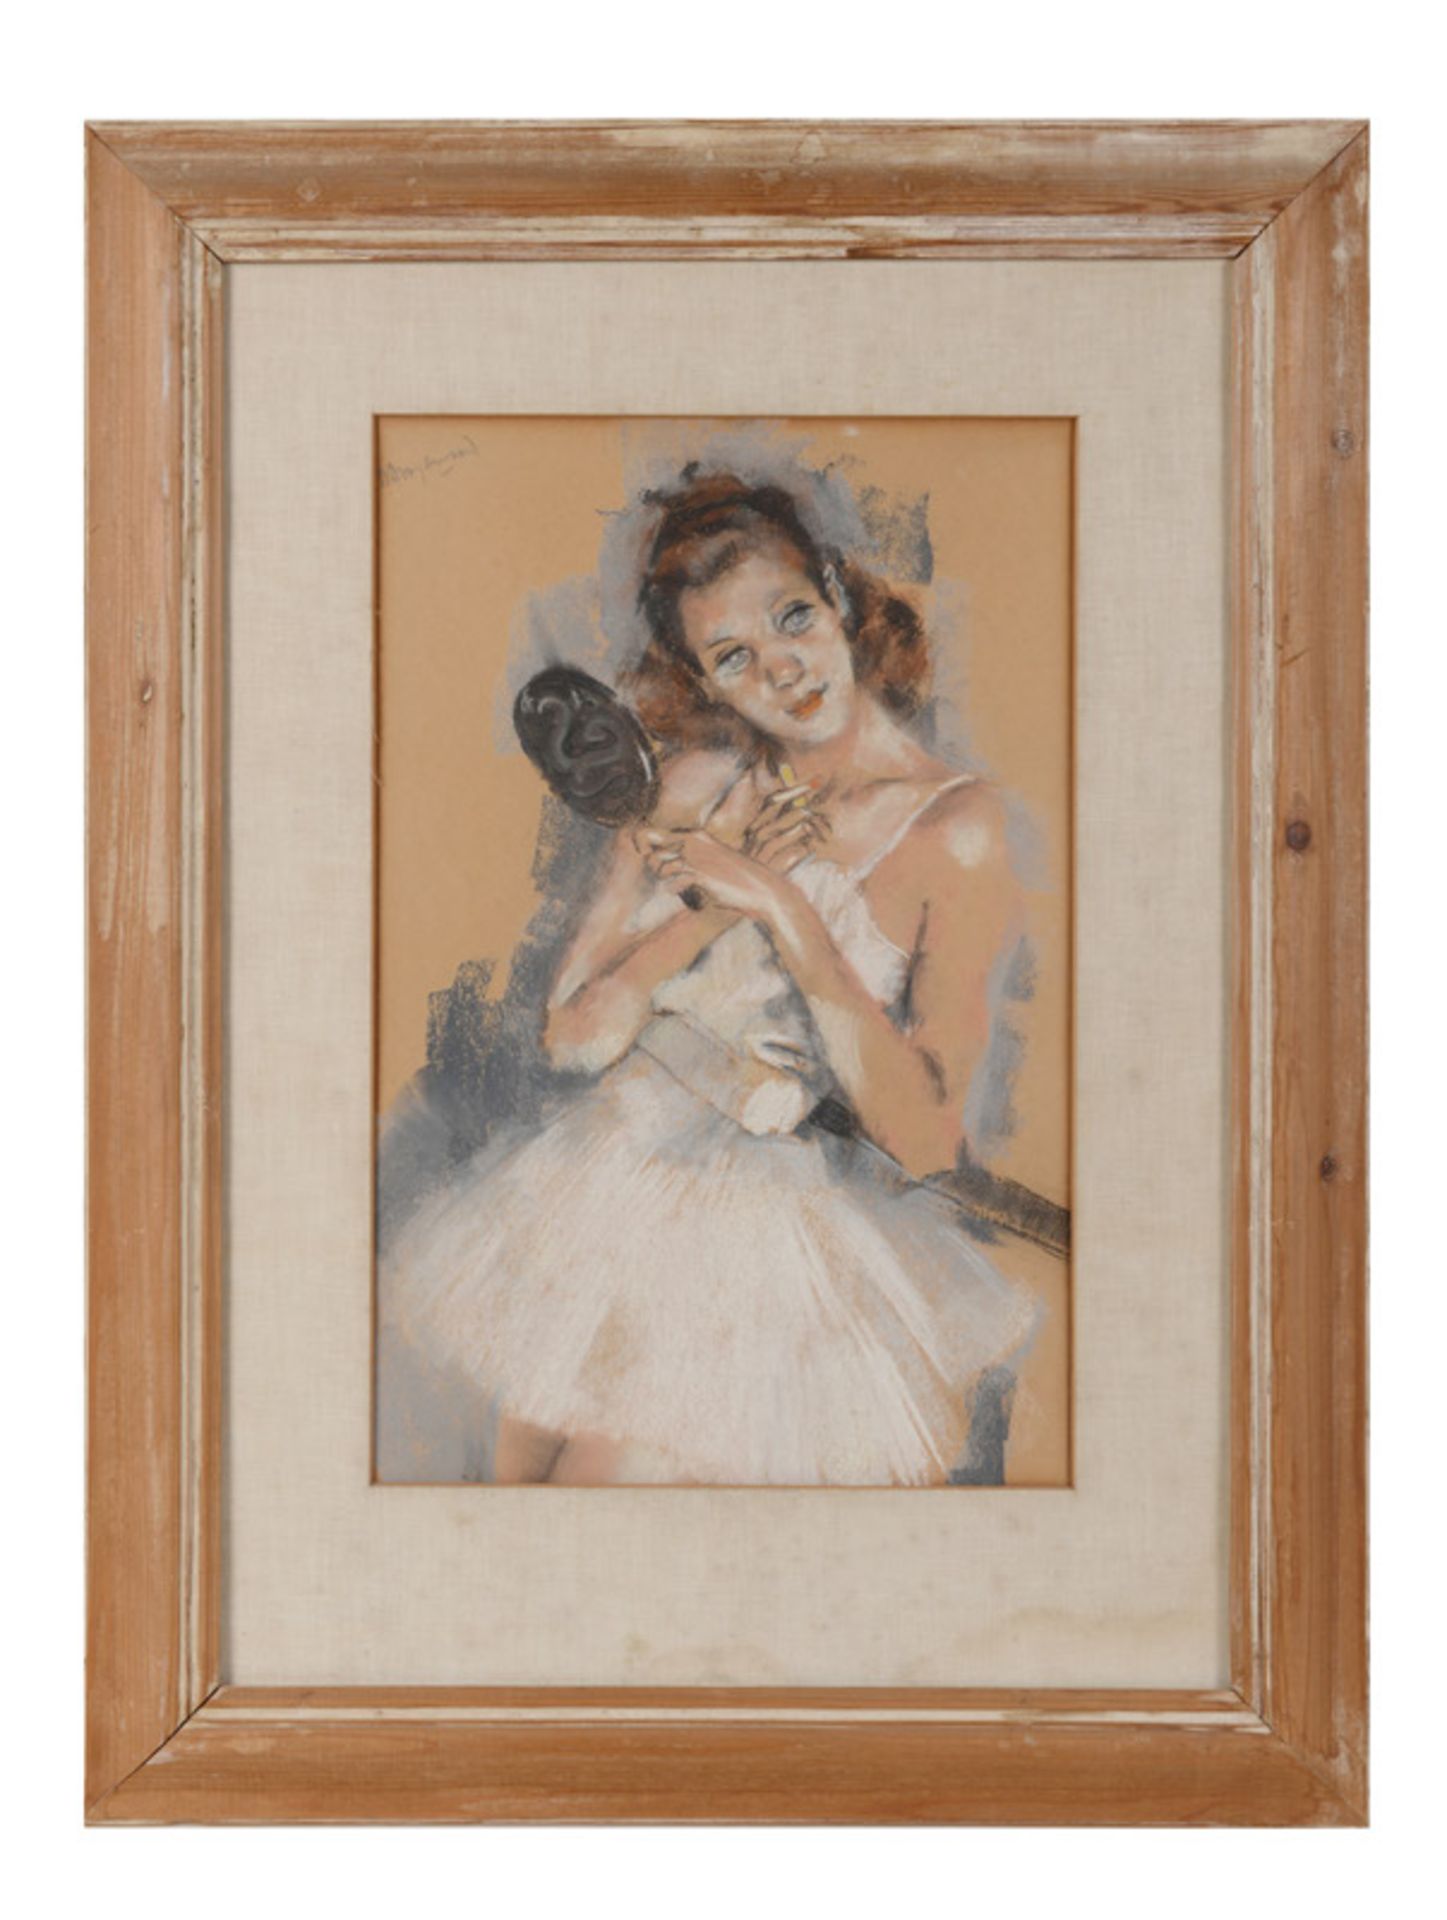 Willem Dooyewaard (1892-1980), 'Ballerina', signed upper left, pastel, 40 x 26 cm. - Image 2 of 2